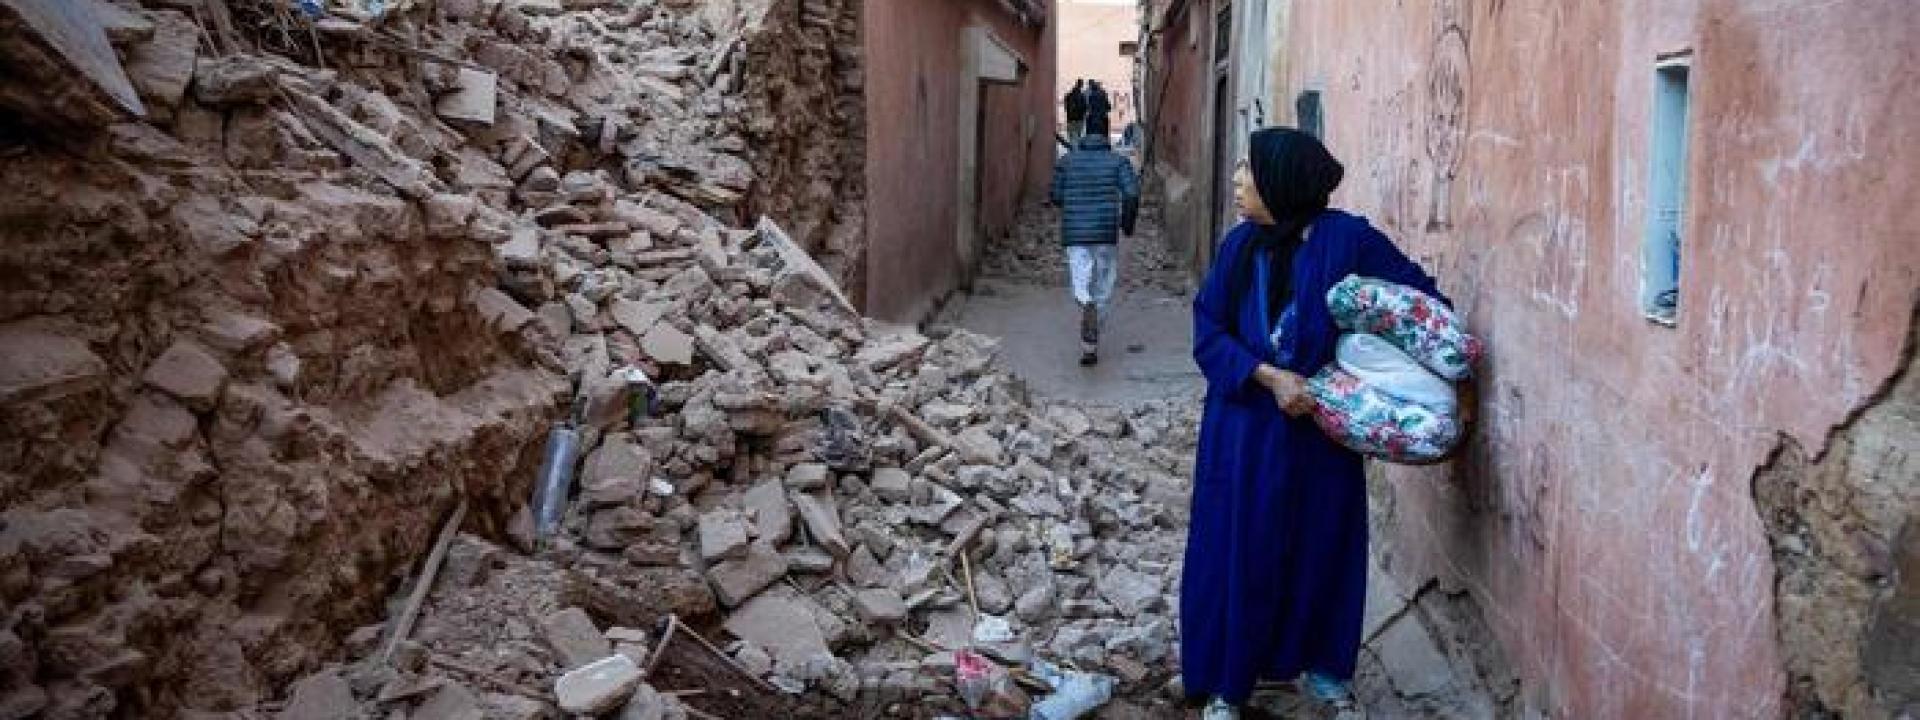 Terremoto di magnitudo 7 in Marocco, al momento oltre 600 morti